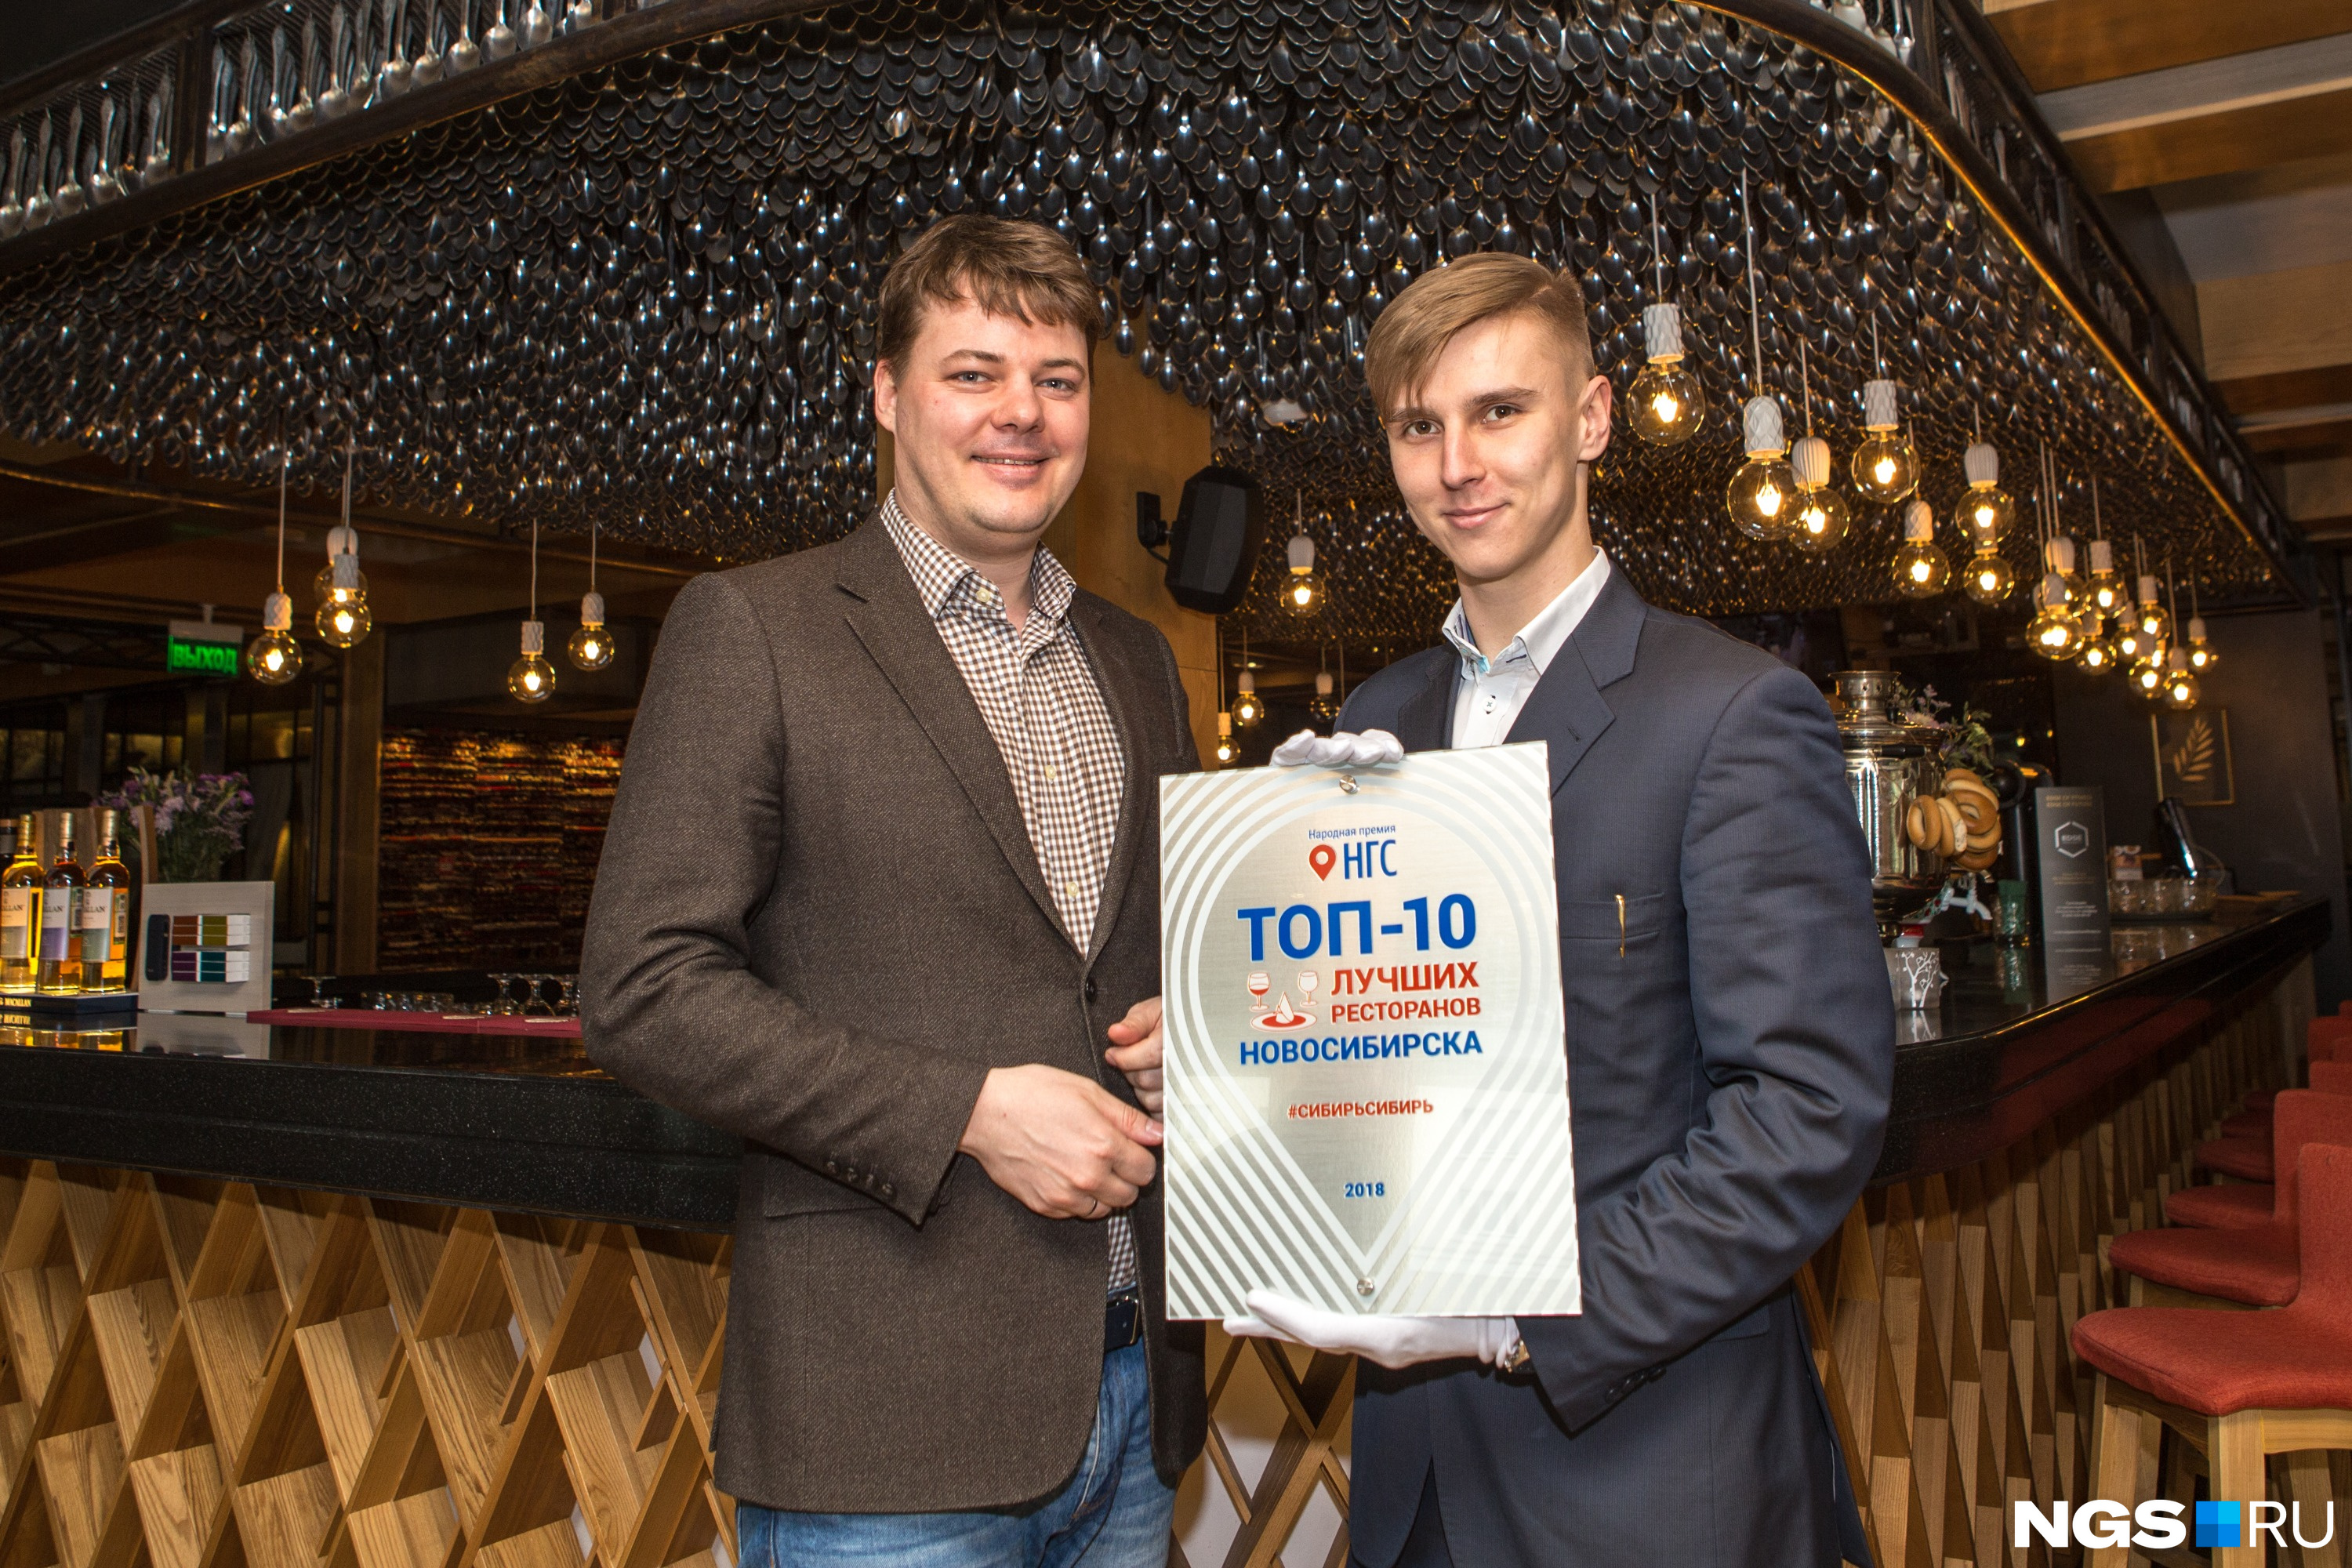 Ресторан Дениса Иванова #СИБИРЬСИБИРЬ, который недавно открылся и в Москве, тоже вошёл в число лучших заведений, по версии читателей